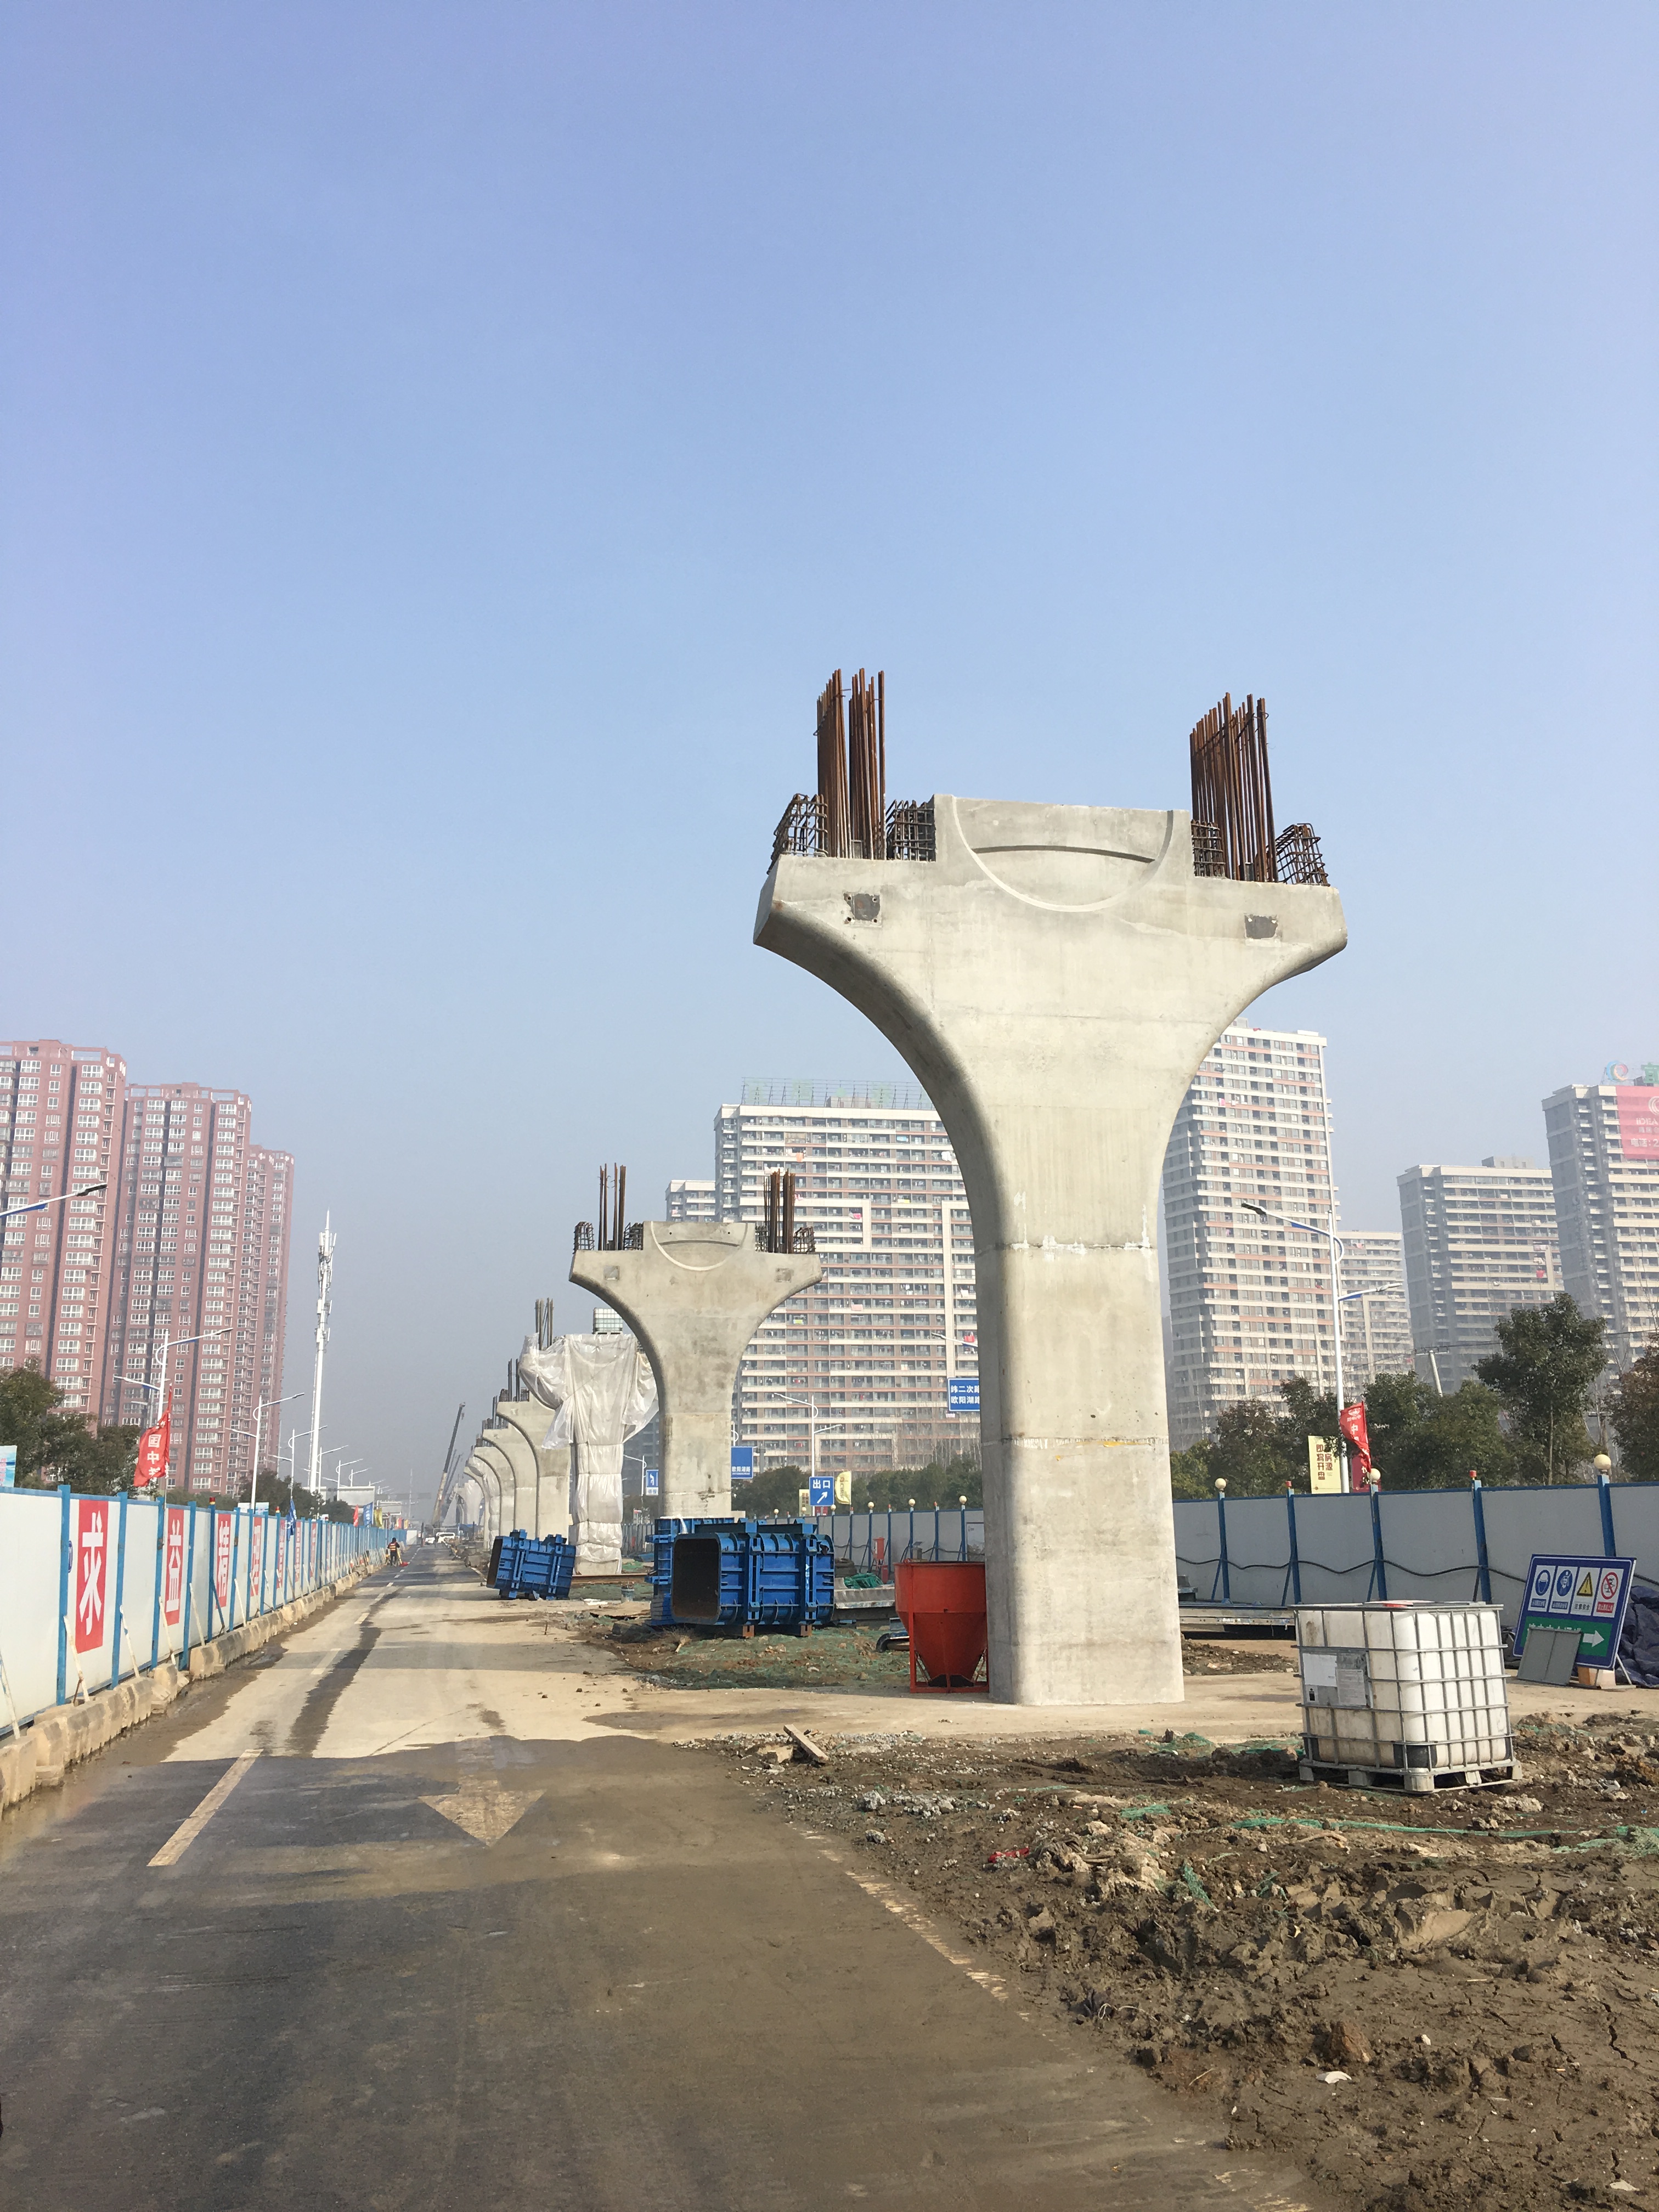 芜湖市跨座式单轨交通工程先期施工段墩柱